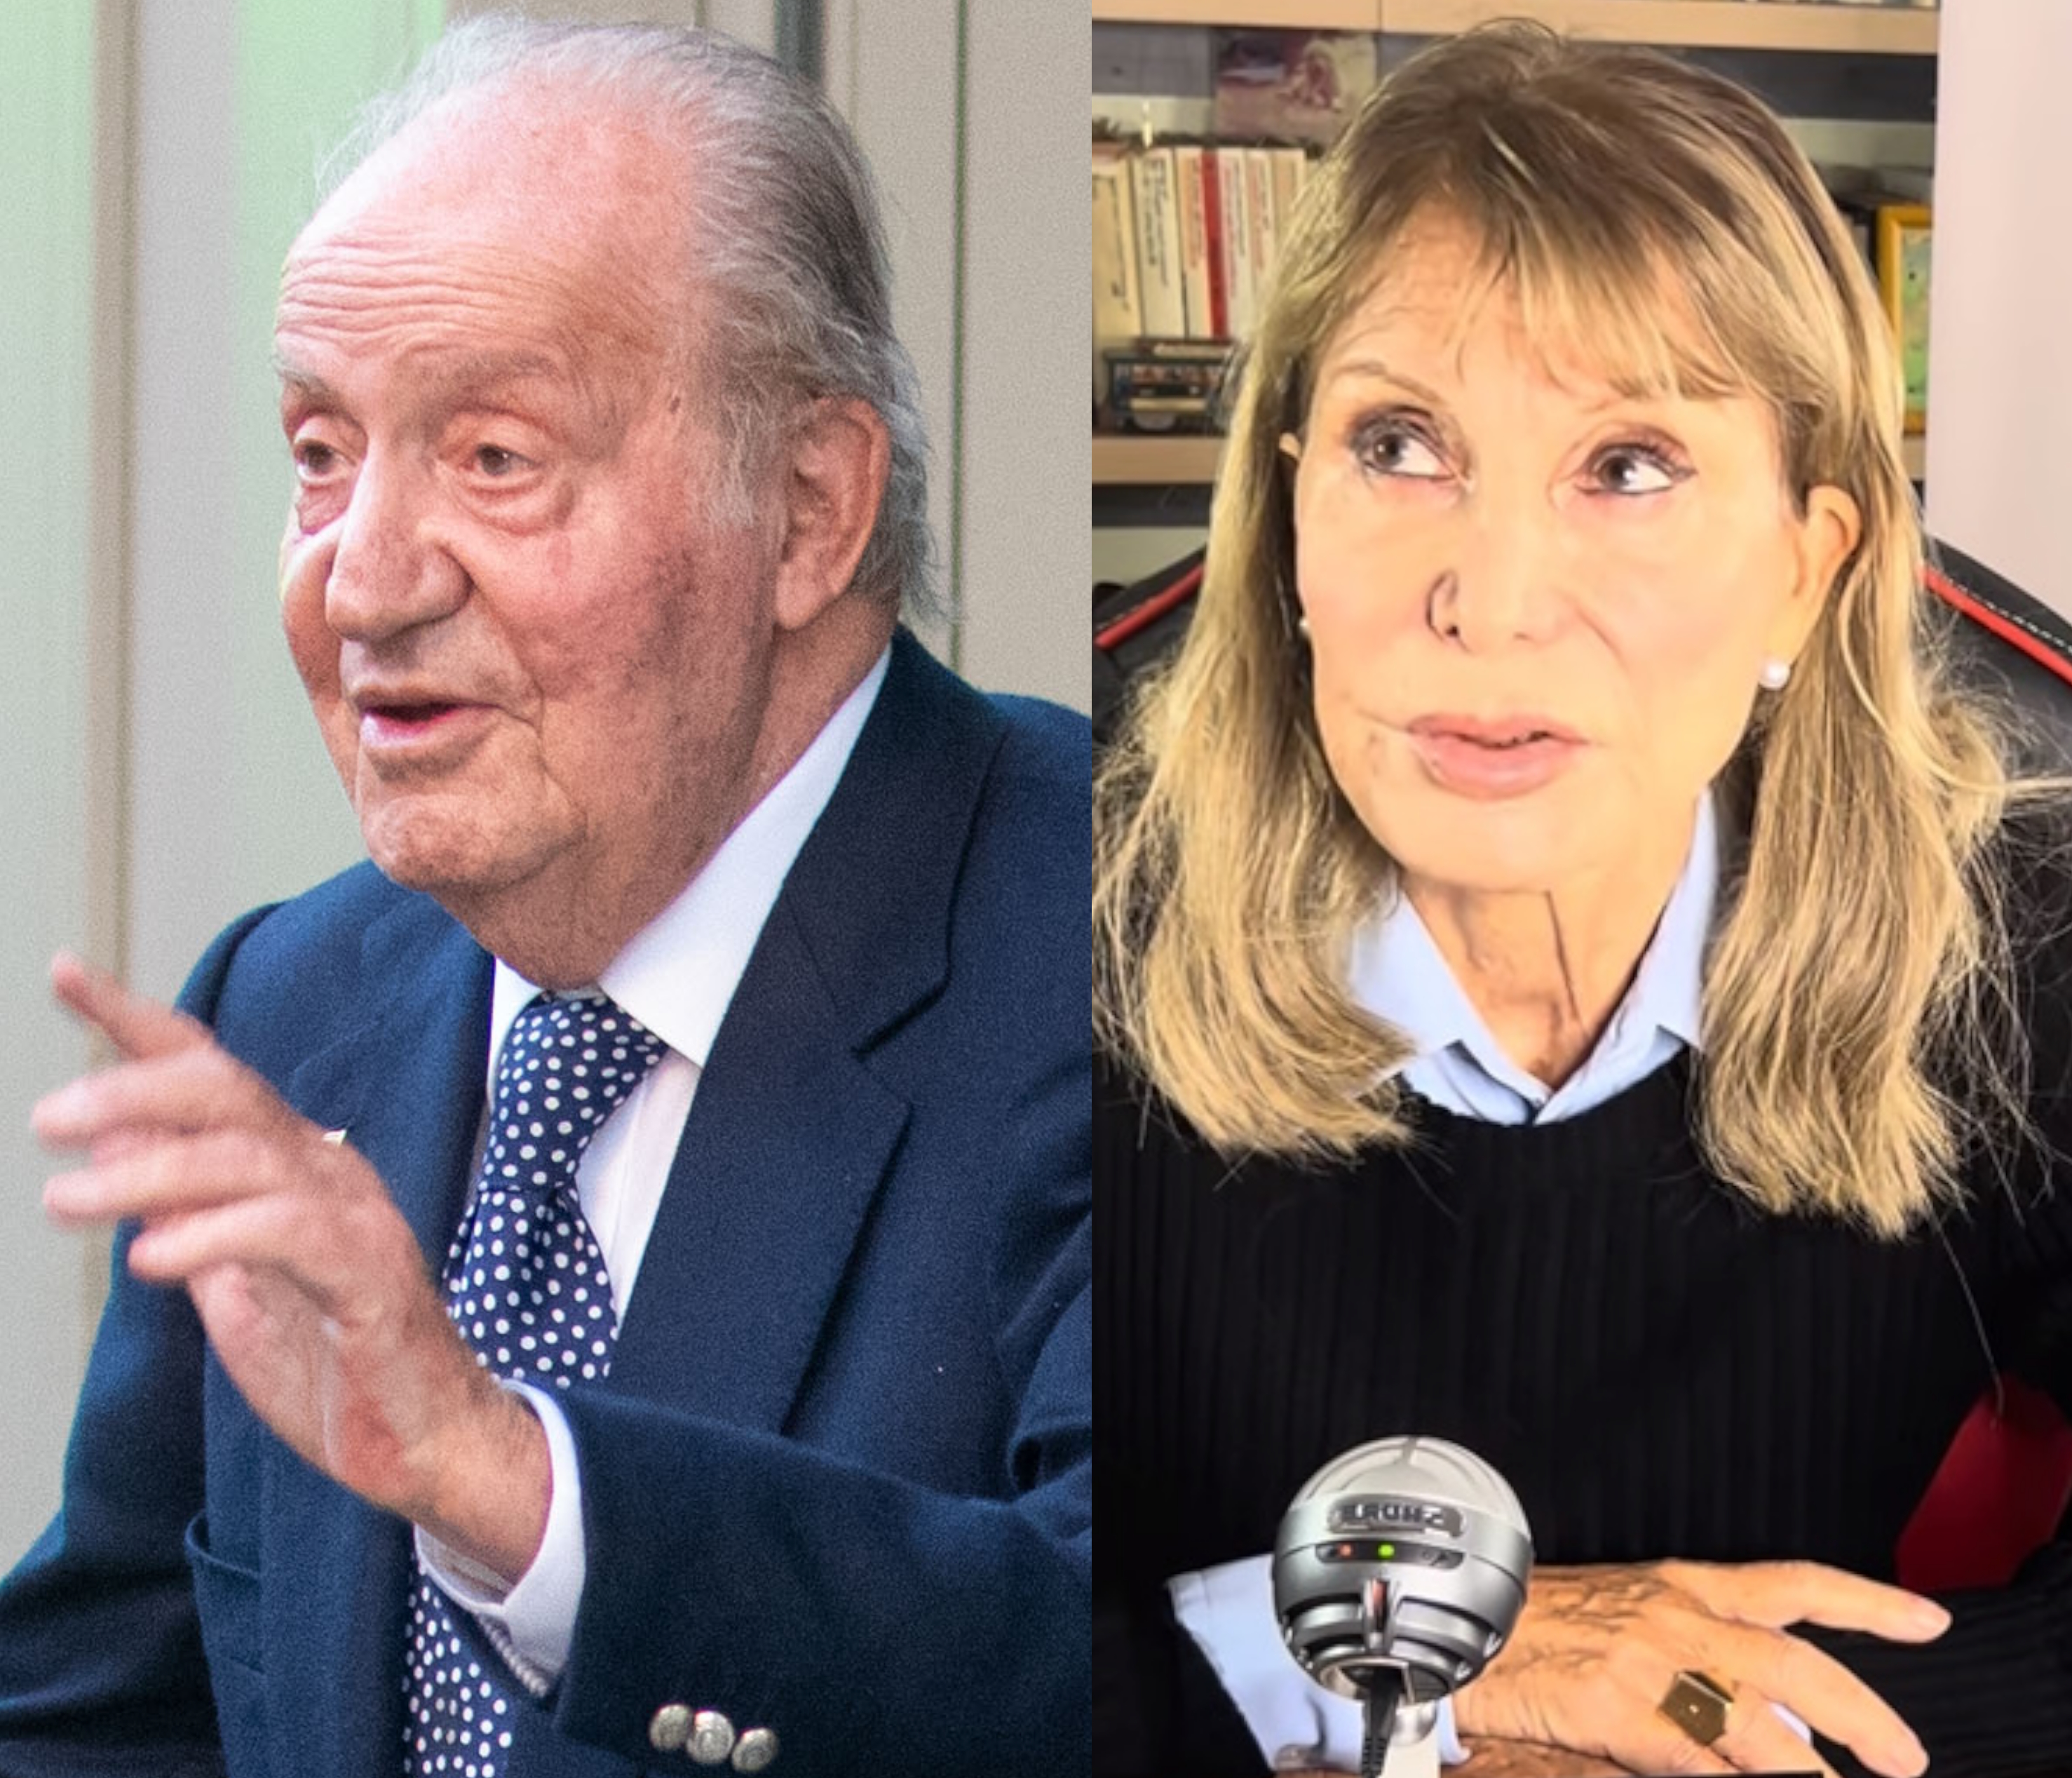 Joan Carles i els convidats al seu aniversari: "No los conoce apenas", diu Pilar Eyre